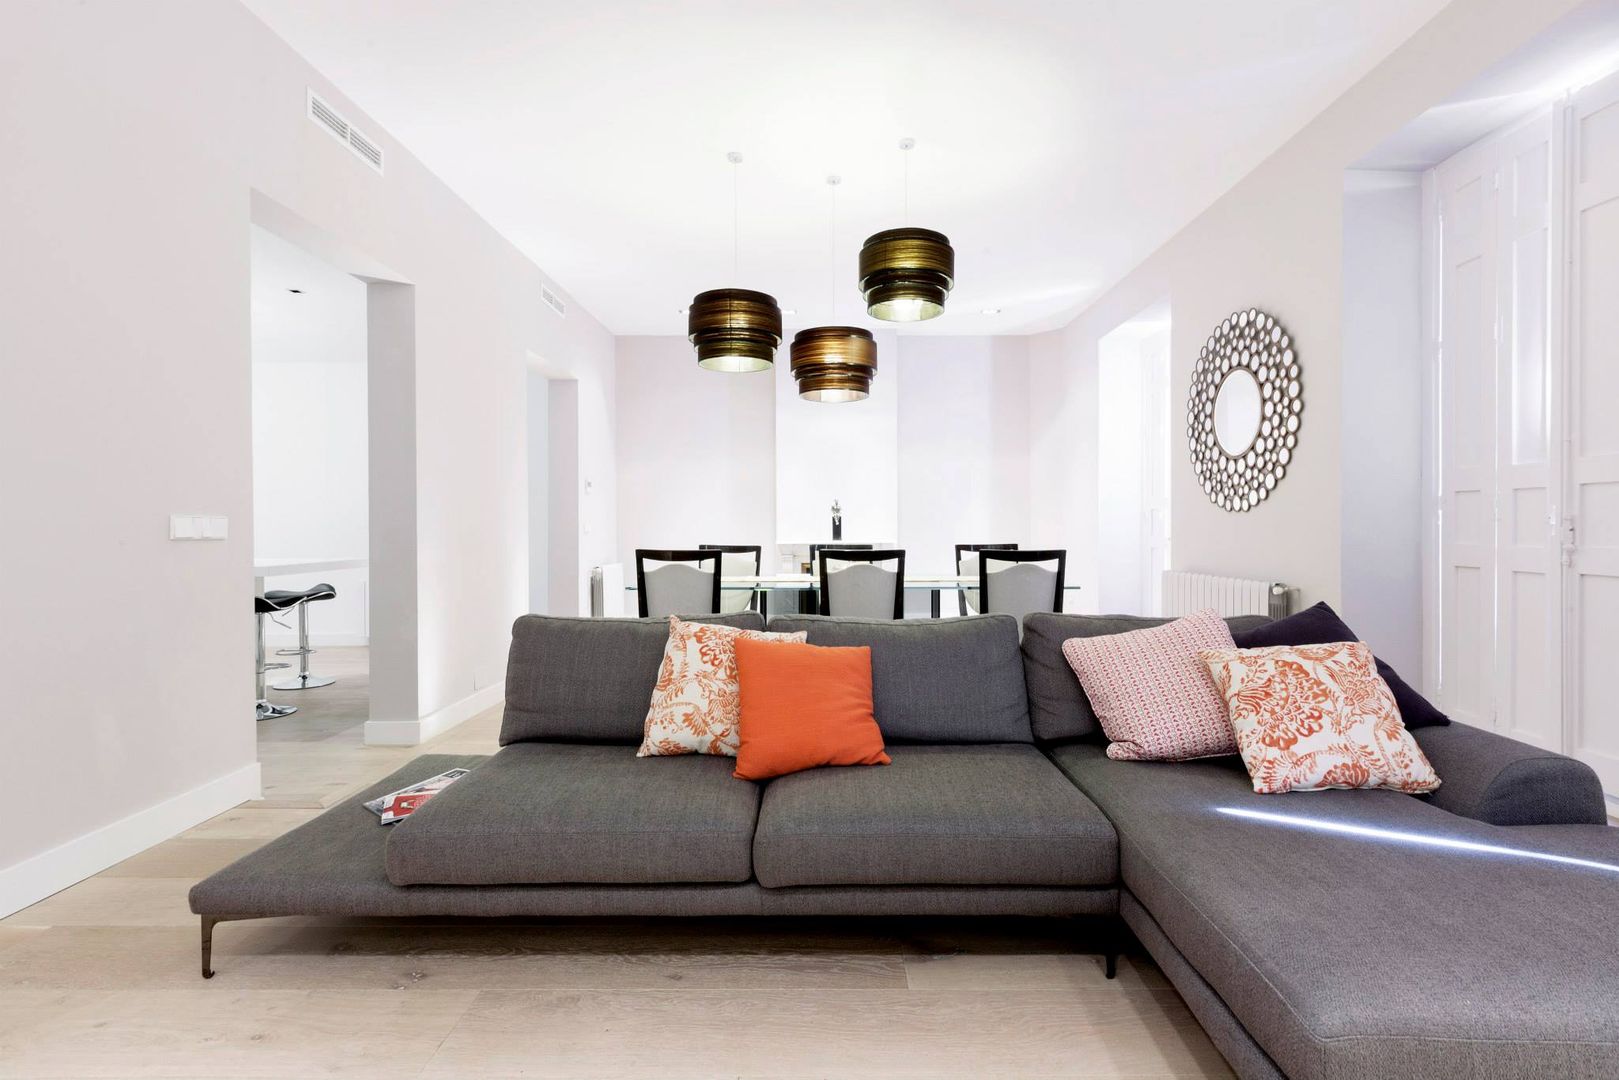 Apartament in Madrid, Simona Garufi Simona Garufi Livings de estilo minimalista